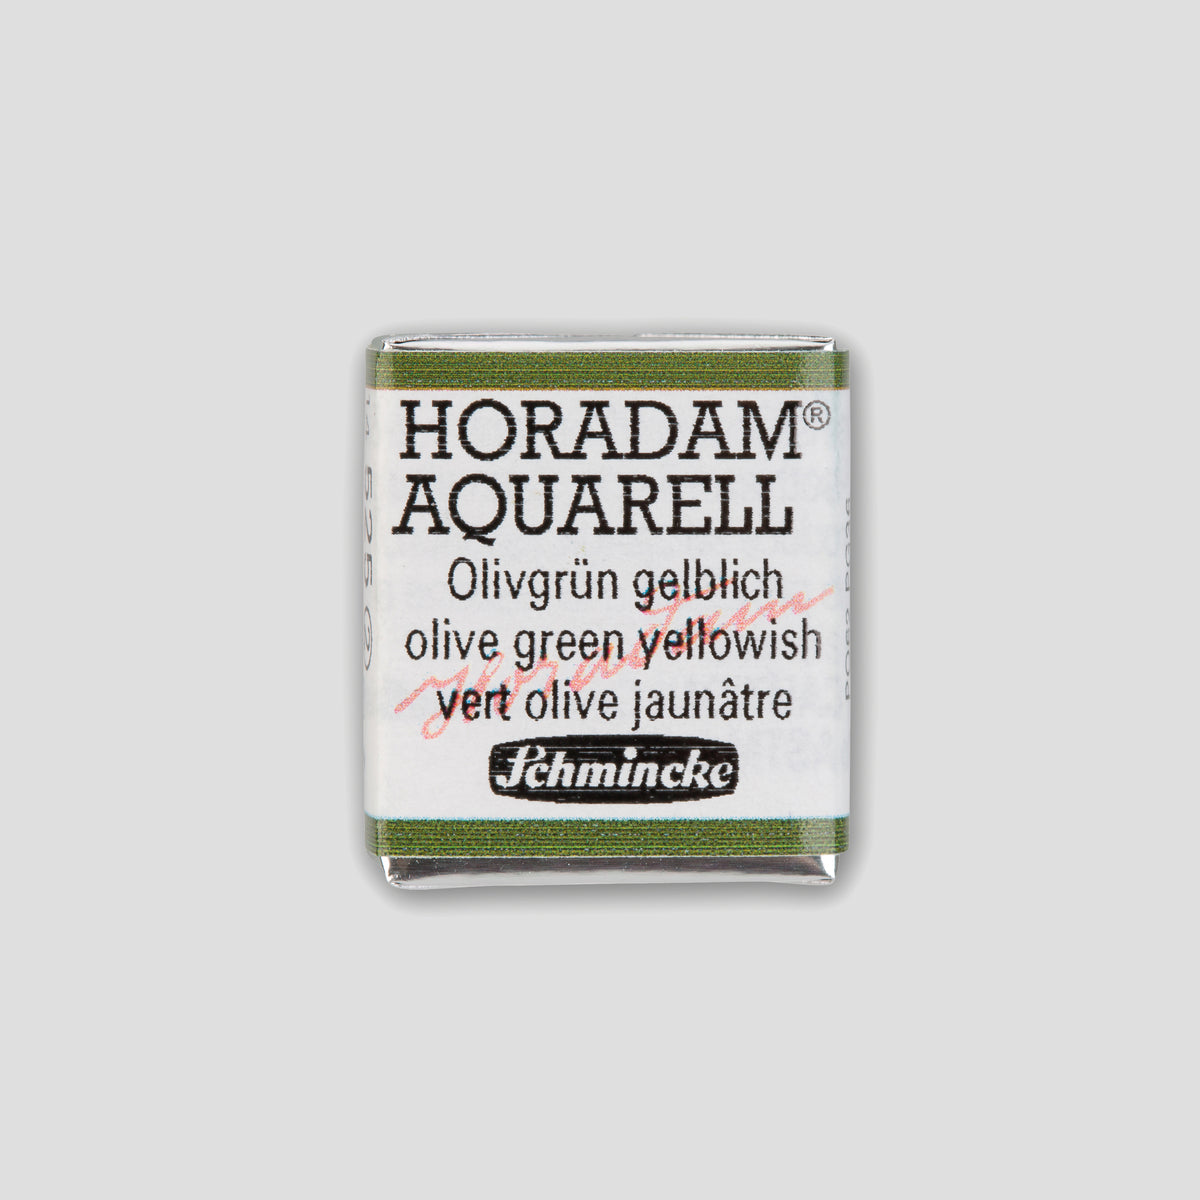 Schmincke Horadam® Half pan 525 Olive green yellowish 2